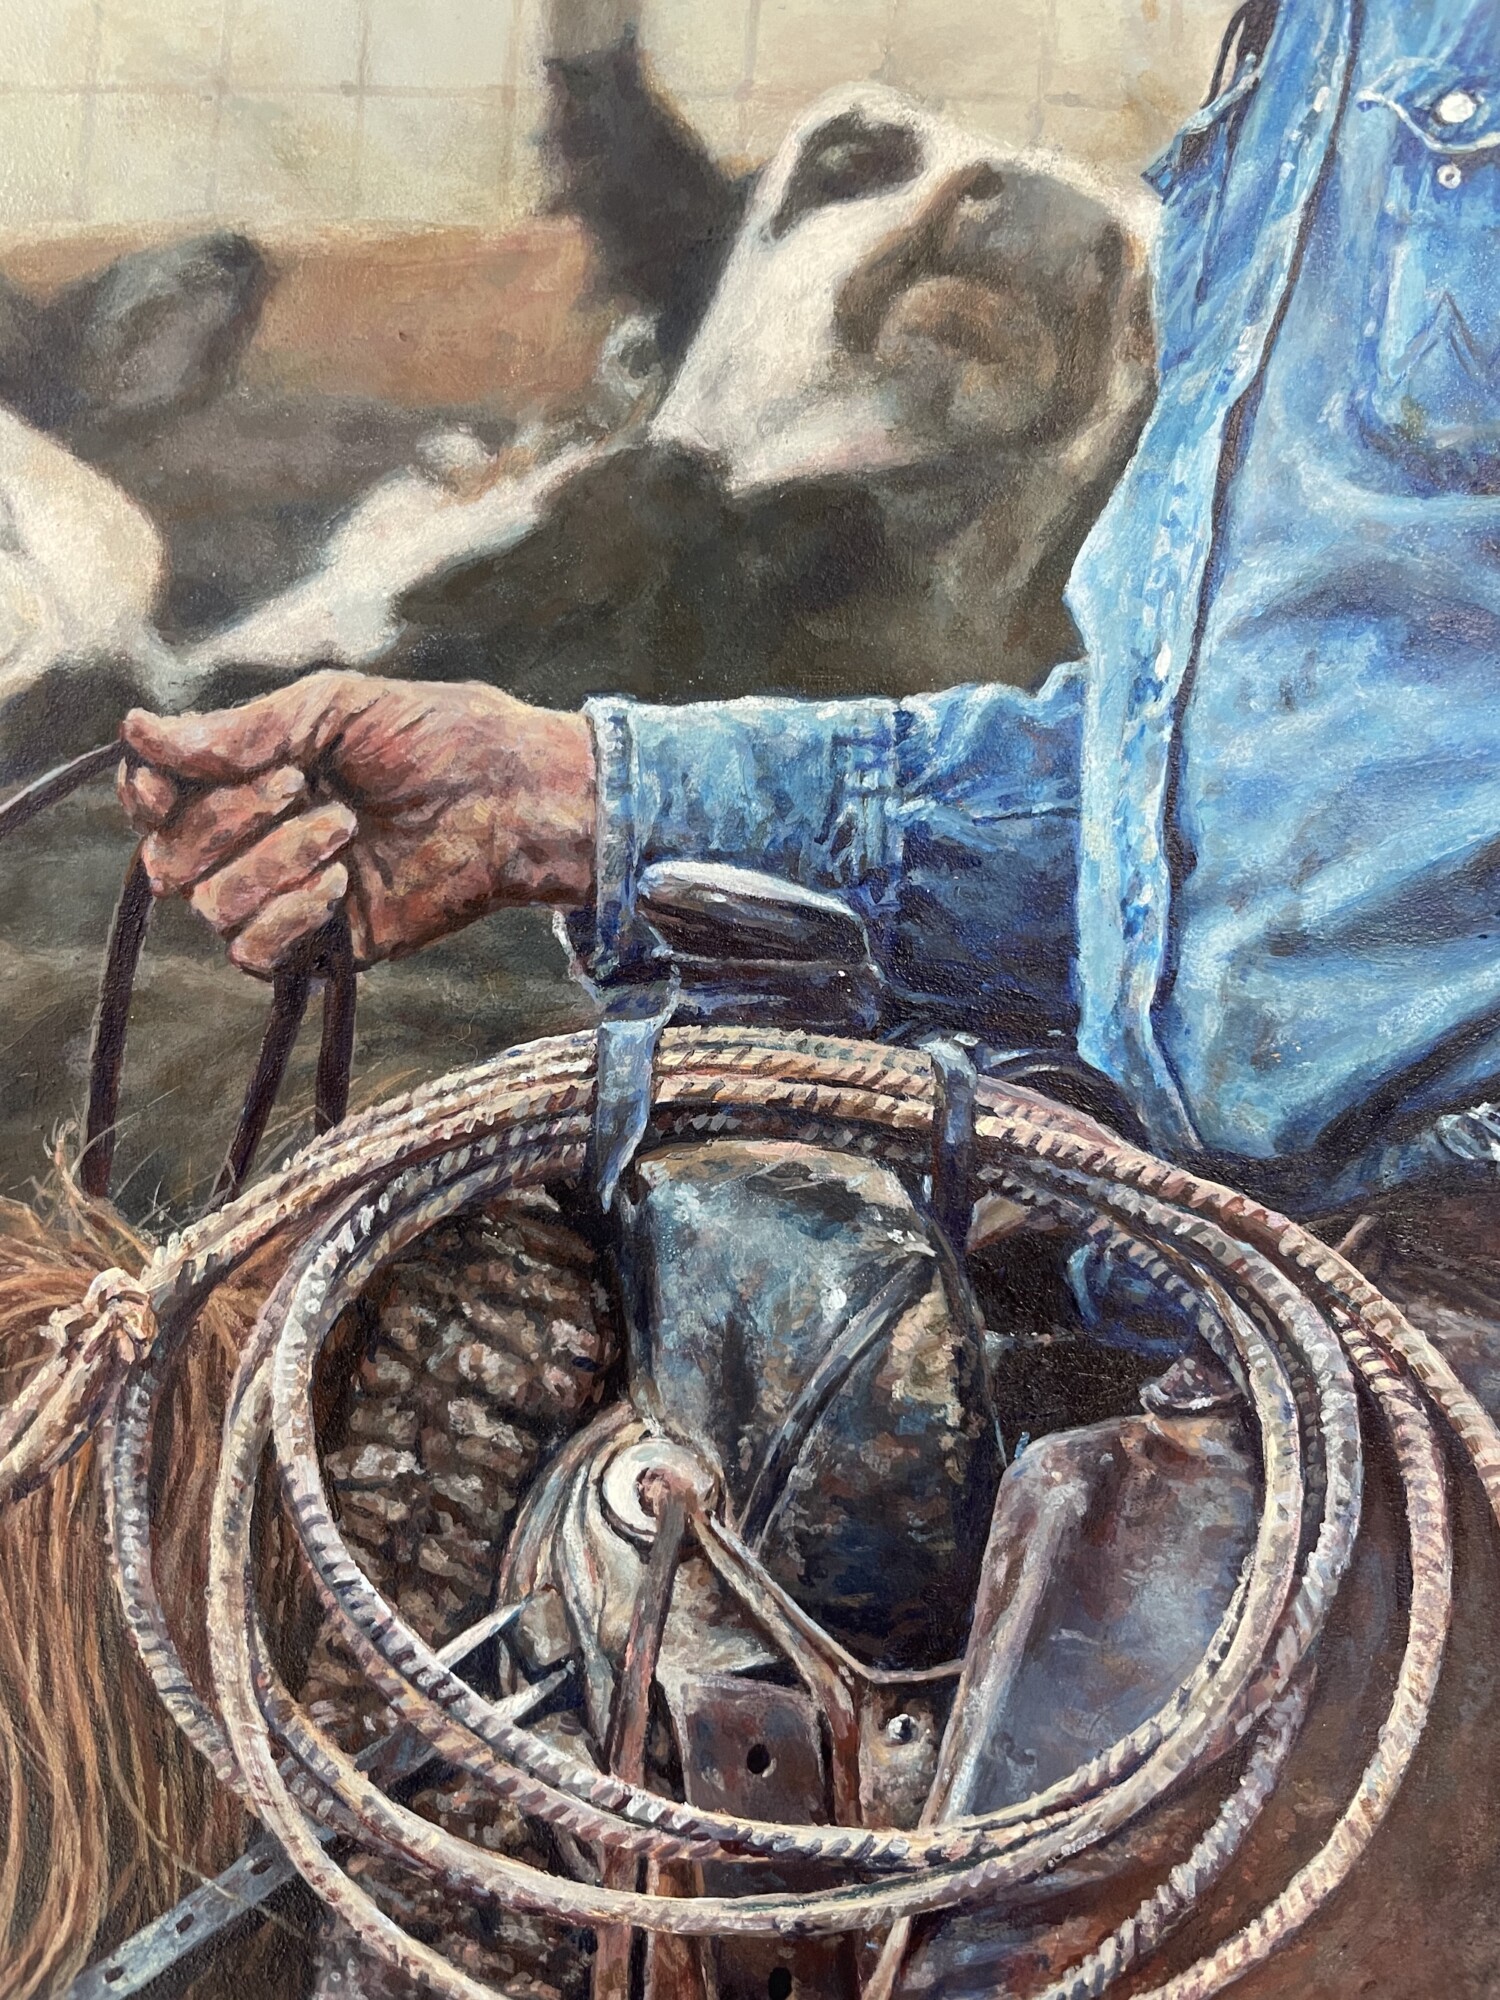 Detalle del fondo y la mano del vaquero en el cuadro de Mia, “Our Last Roundup”. (Cortesía de Mia Huckman)